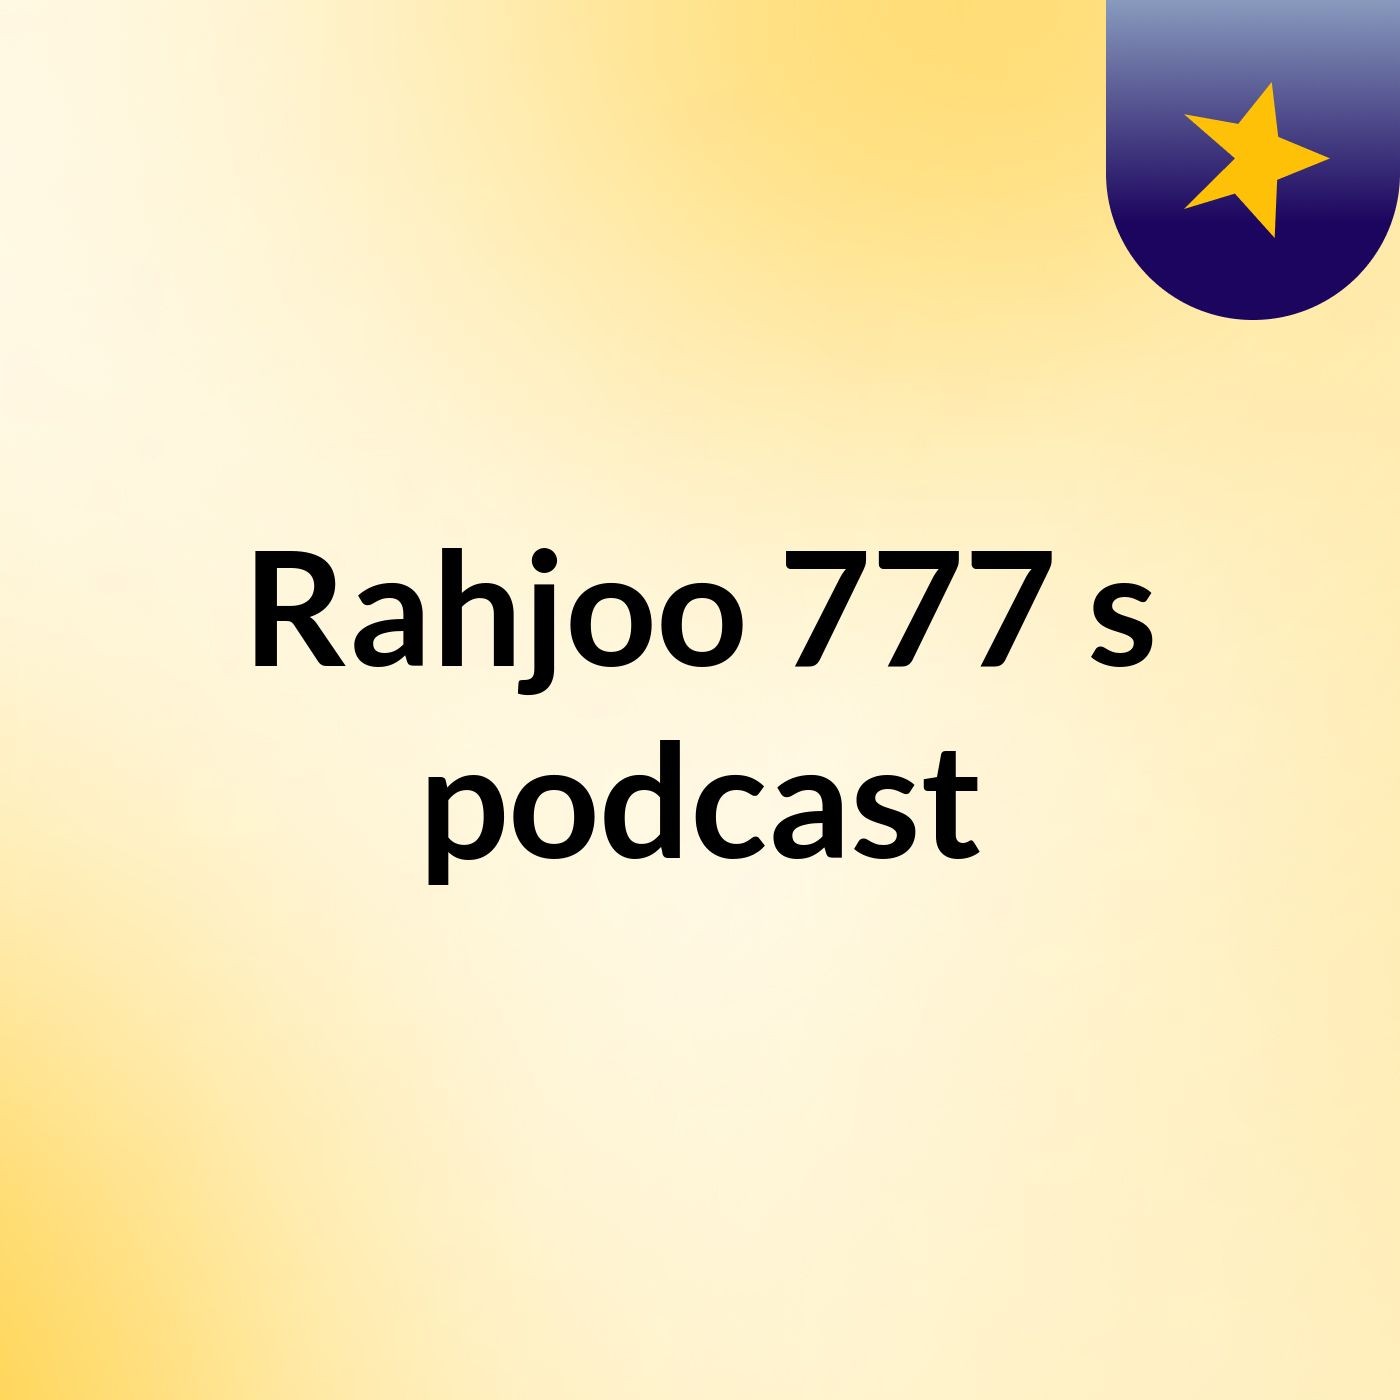 Rahjoo 777's podcast